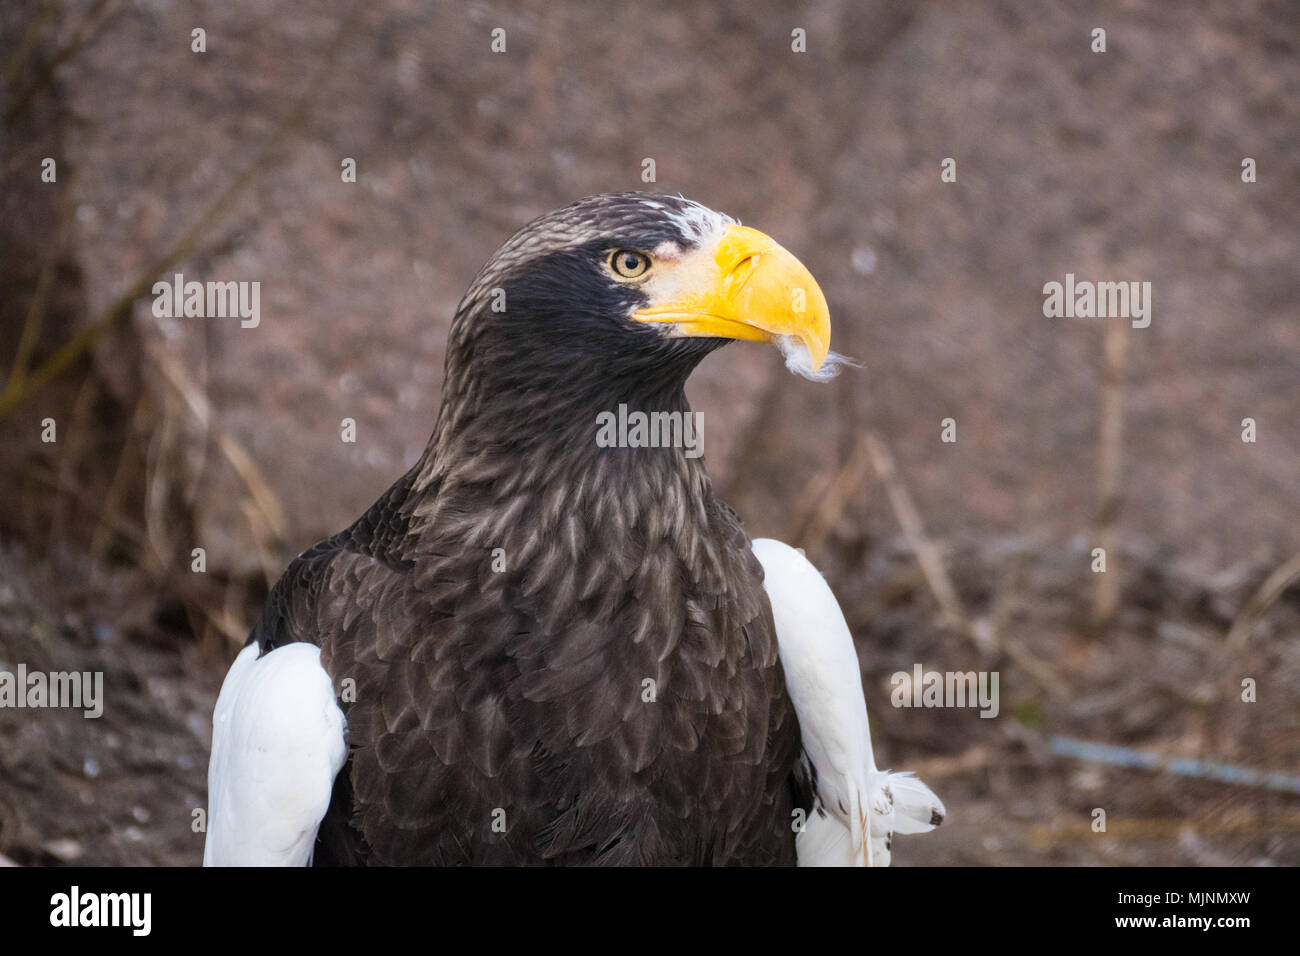 vulture with yellow beak Stock Photo